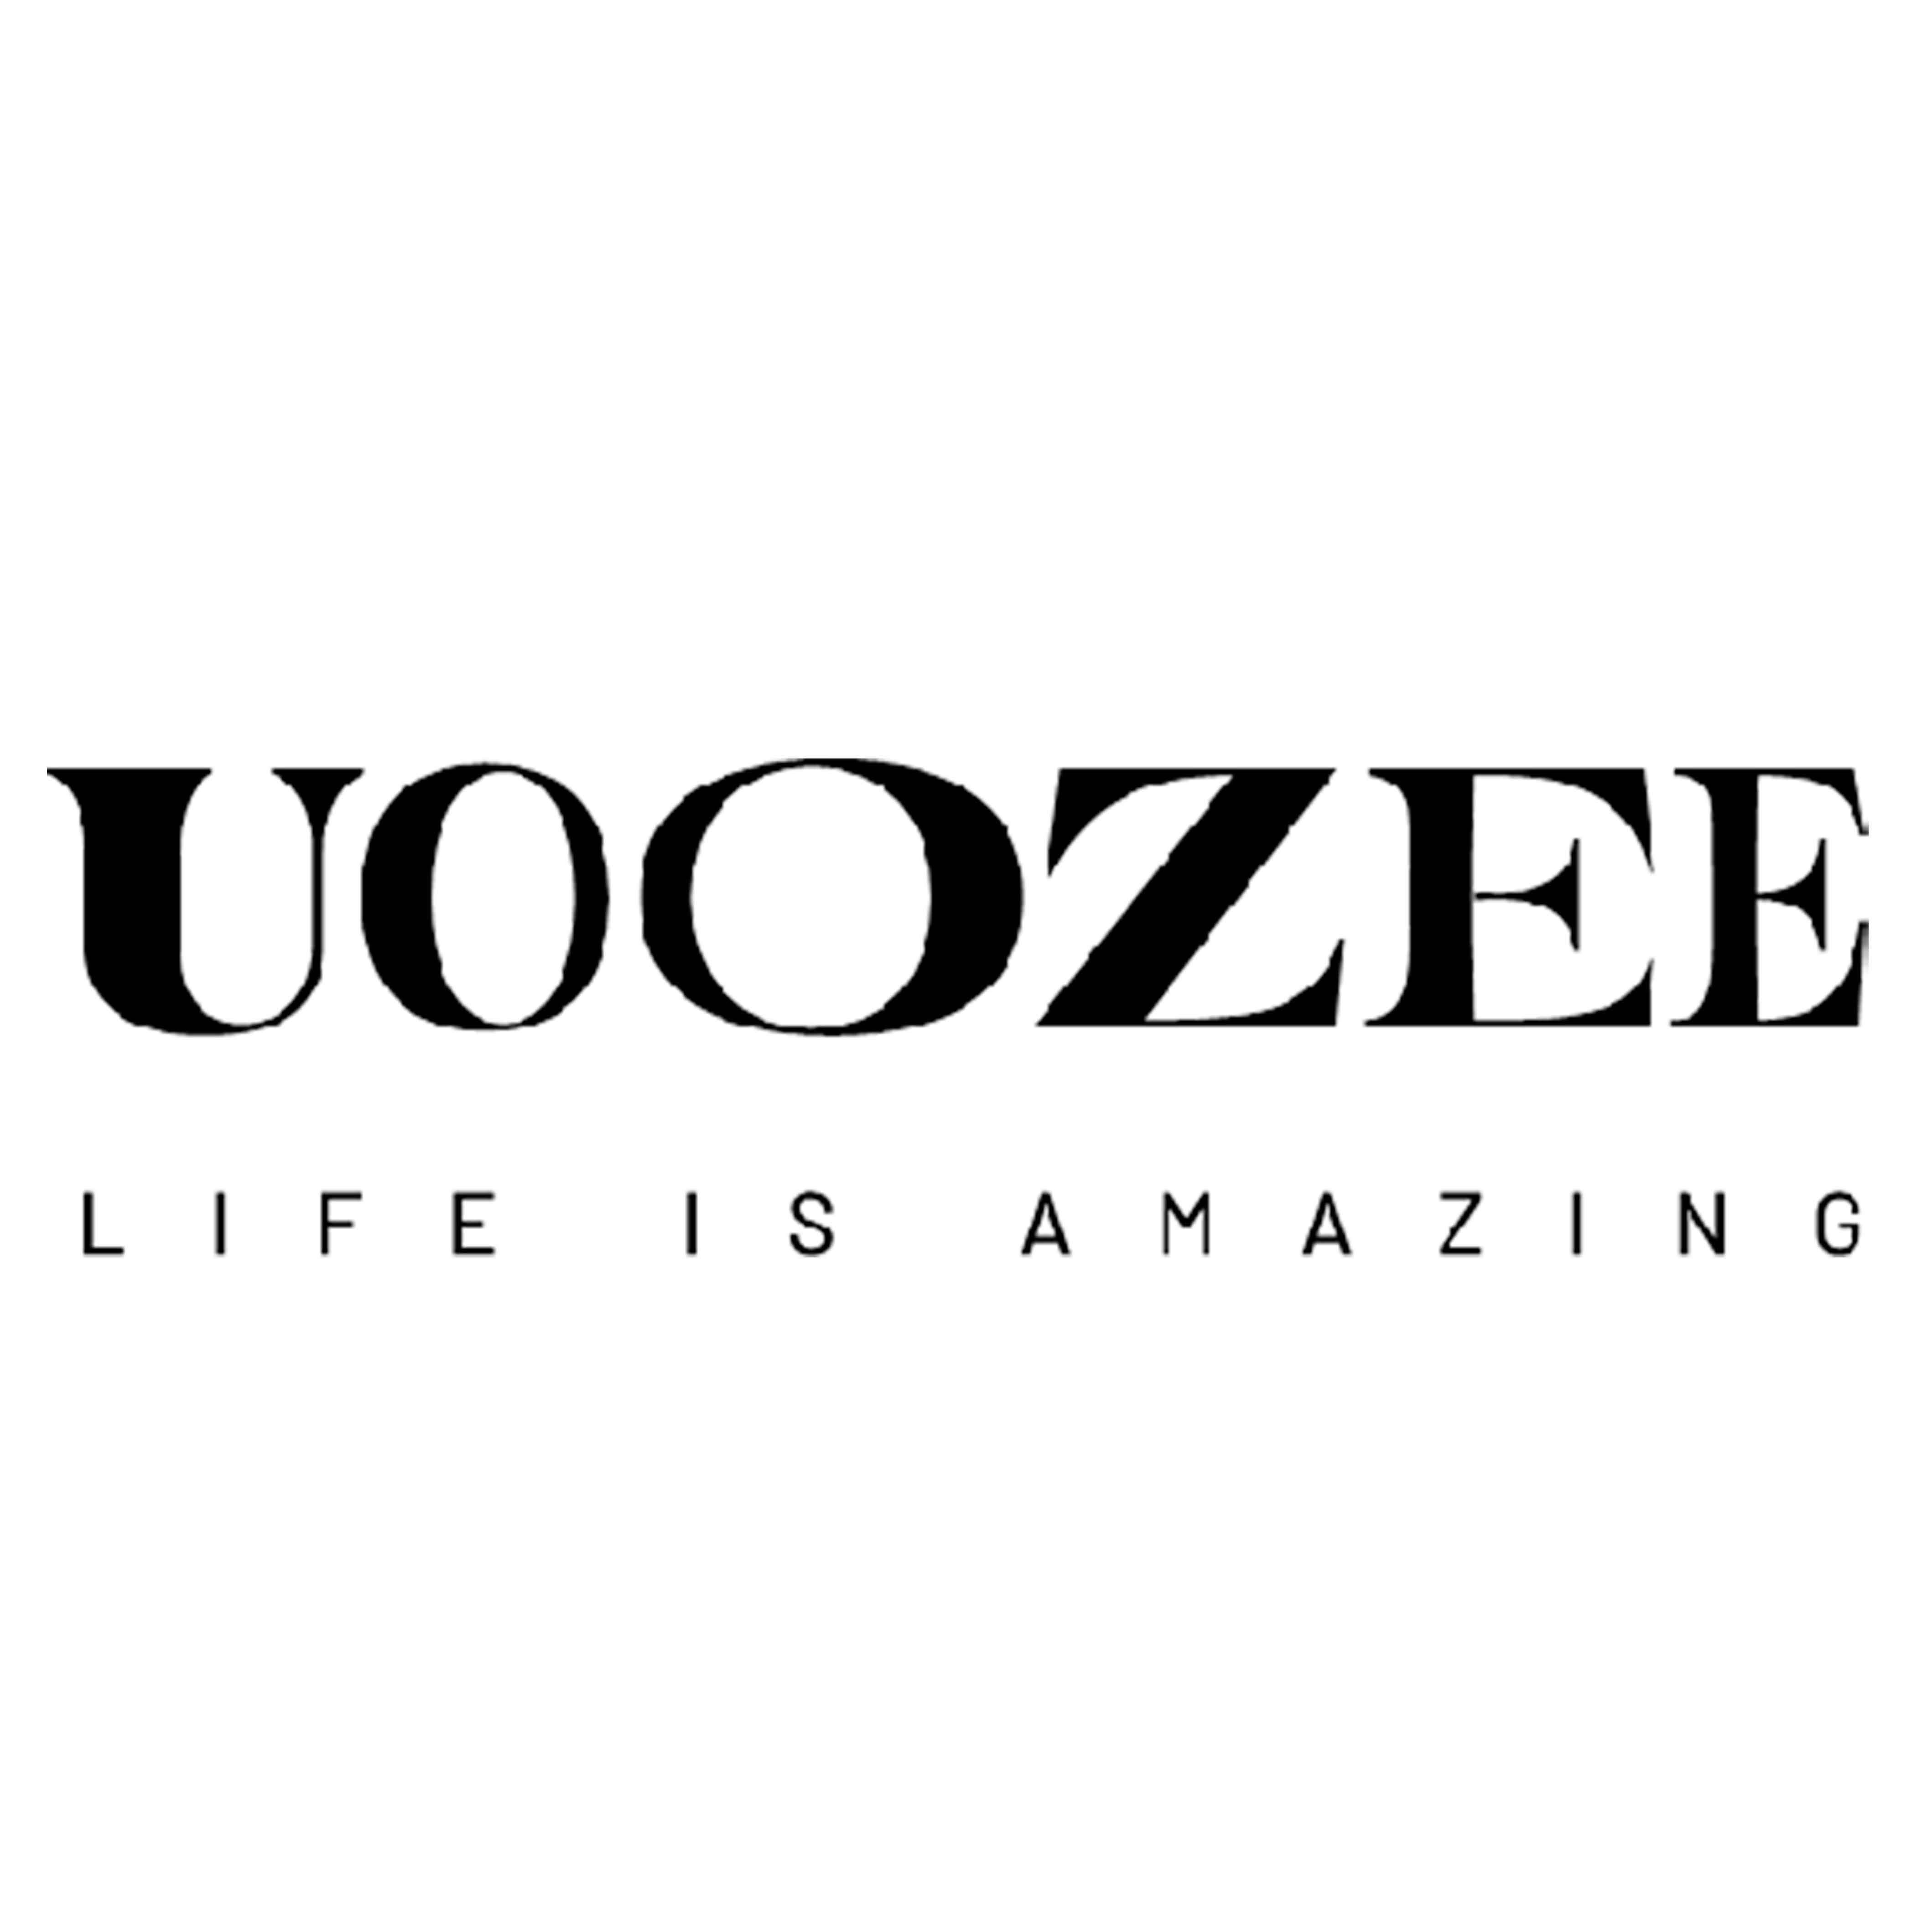 Uoozee logo